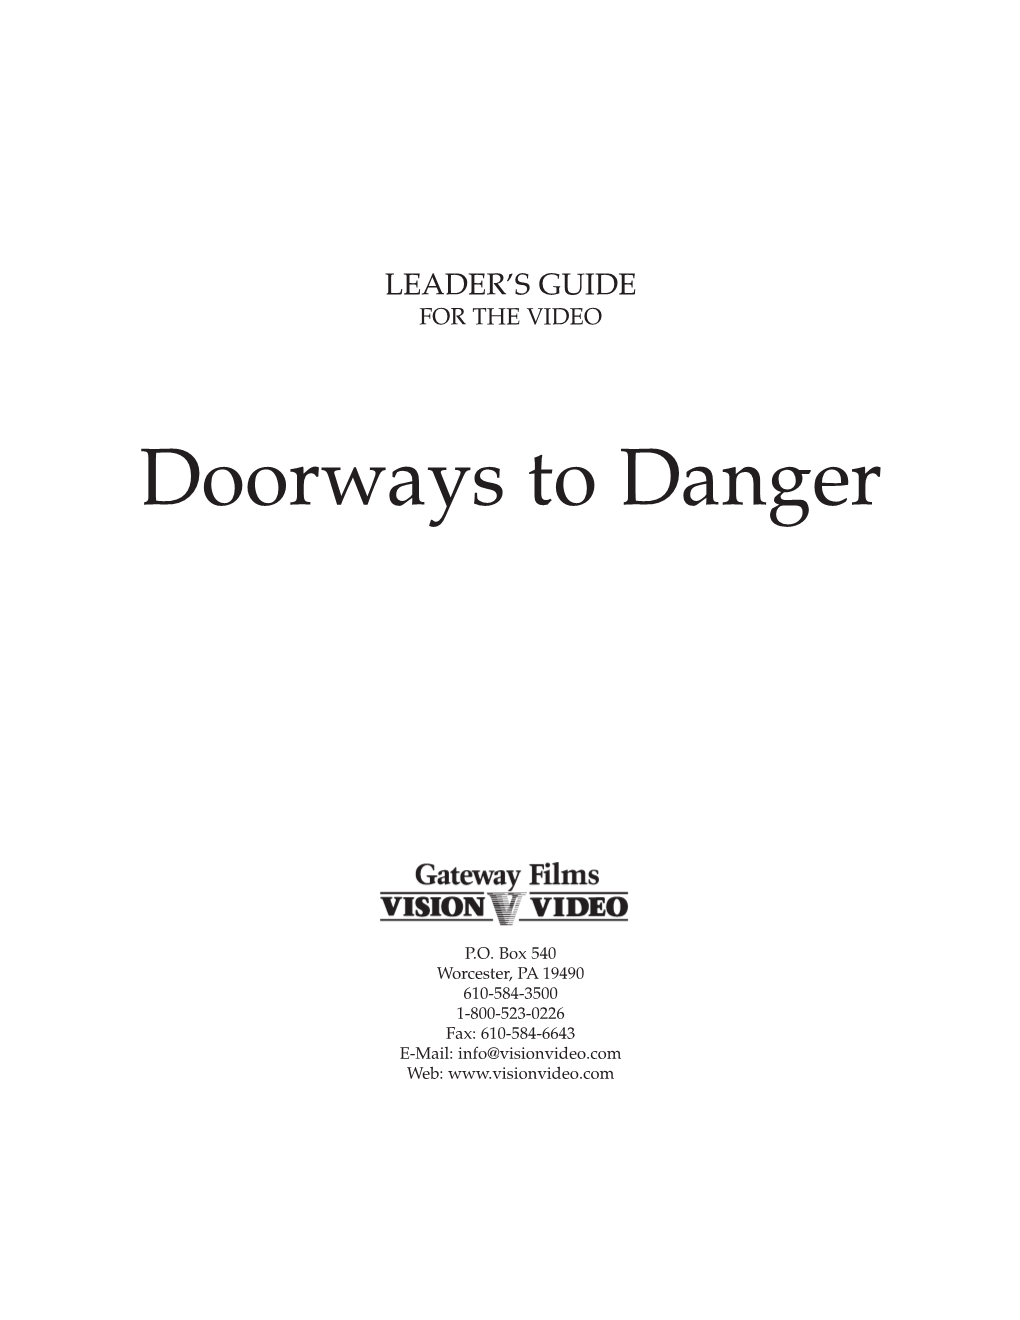 Doorways to Danger